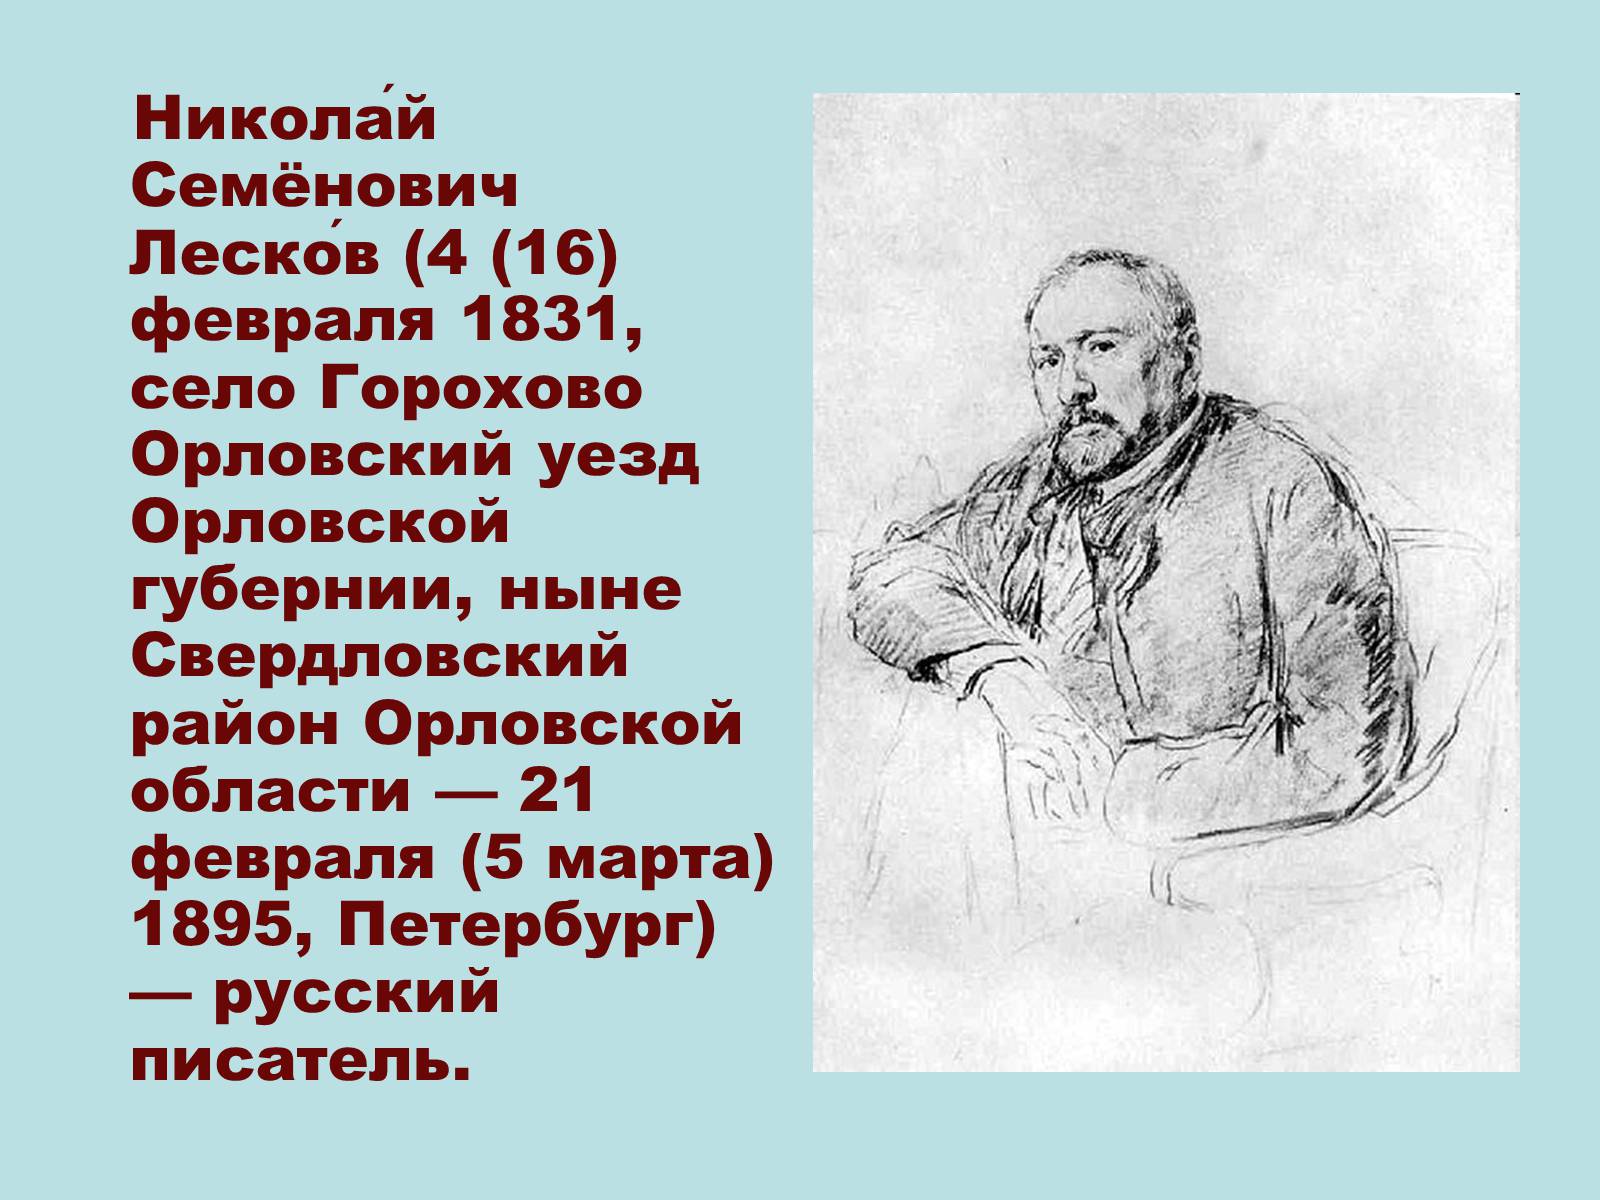 Николай Лесков (1831) русский писатель-прозаик